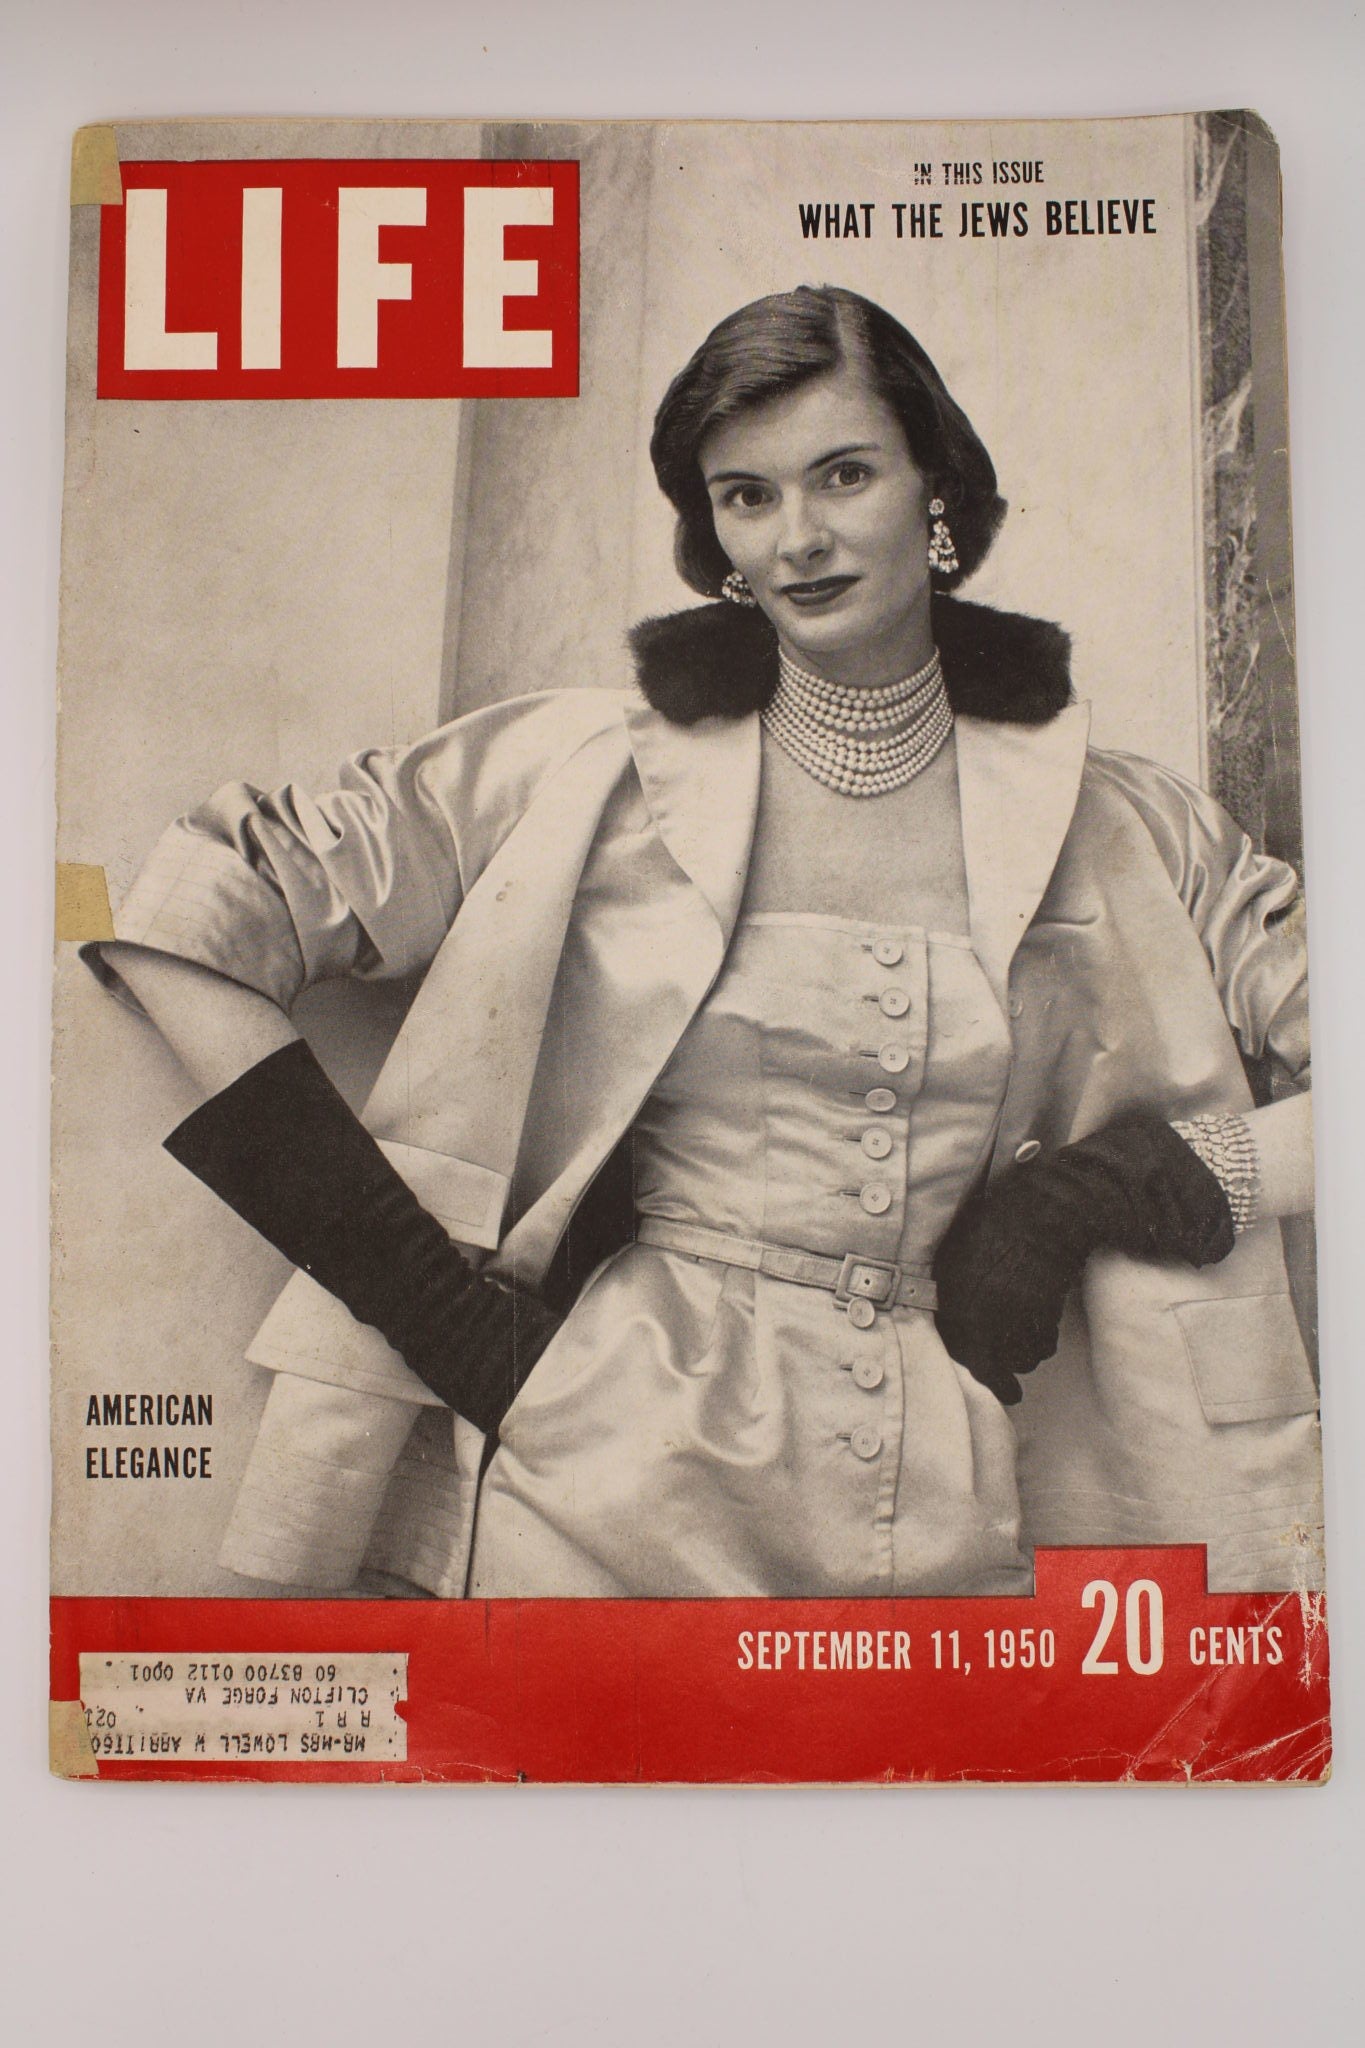 LIFE Magazine Issue September 11, 1950